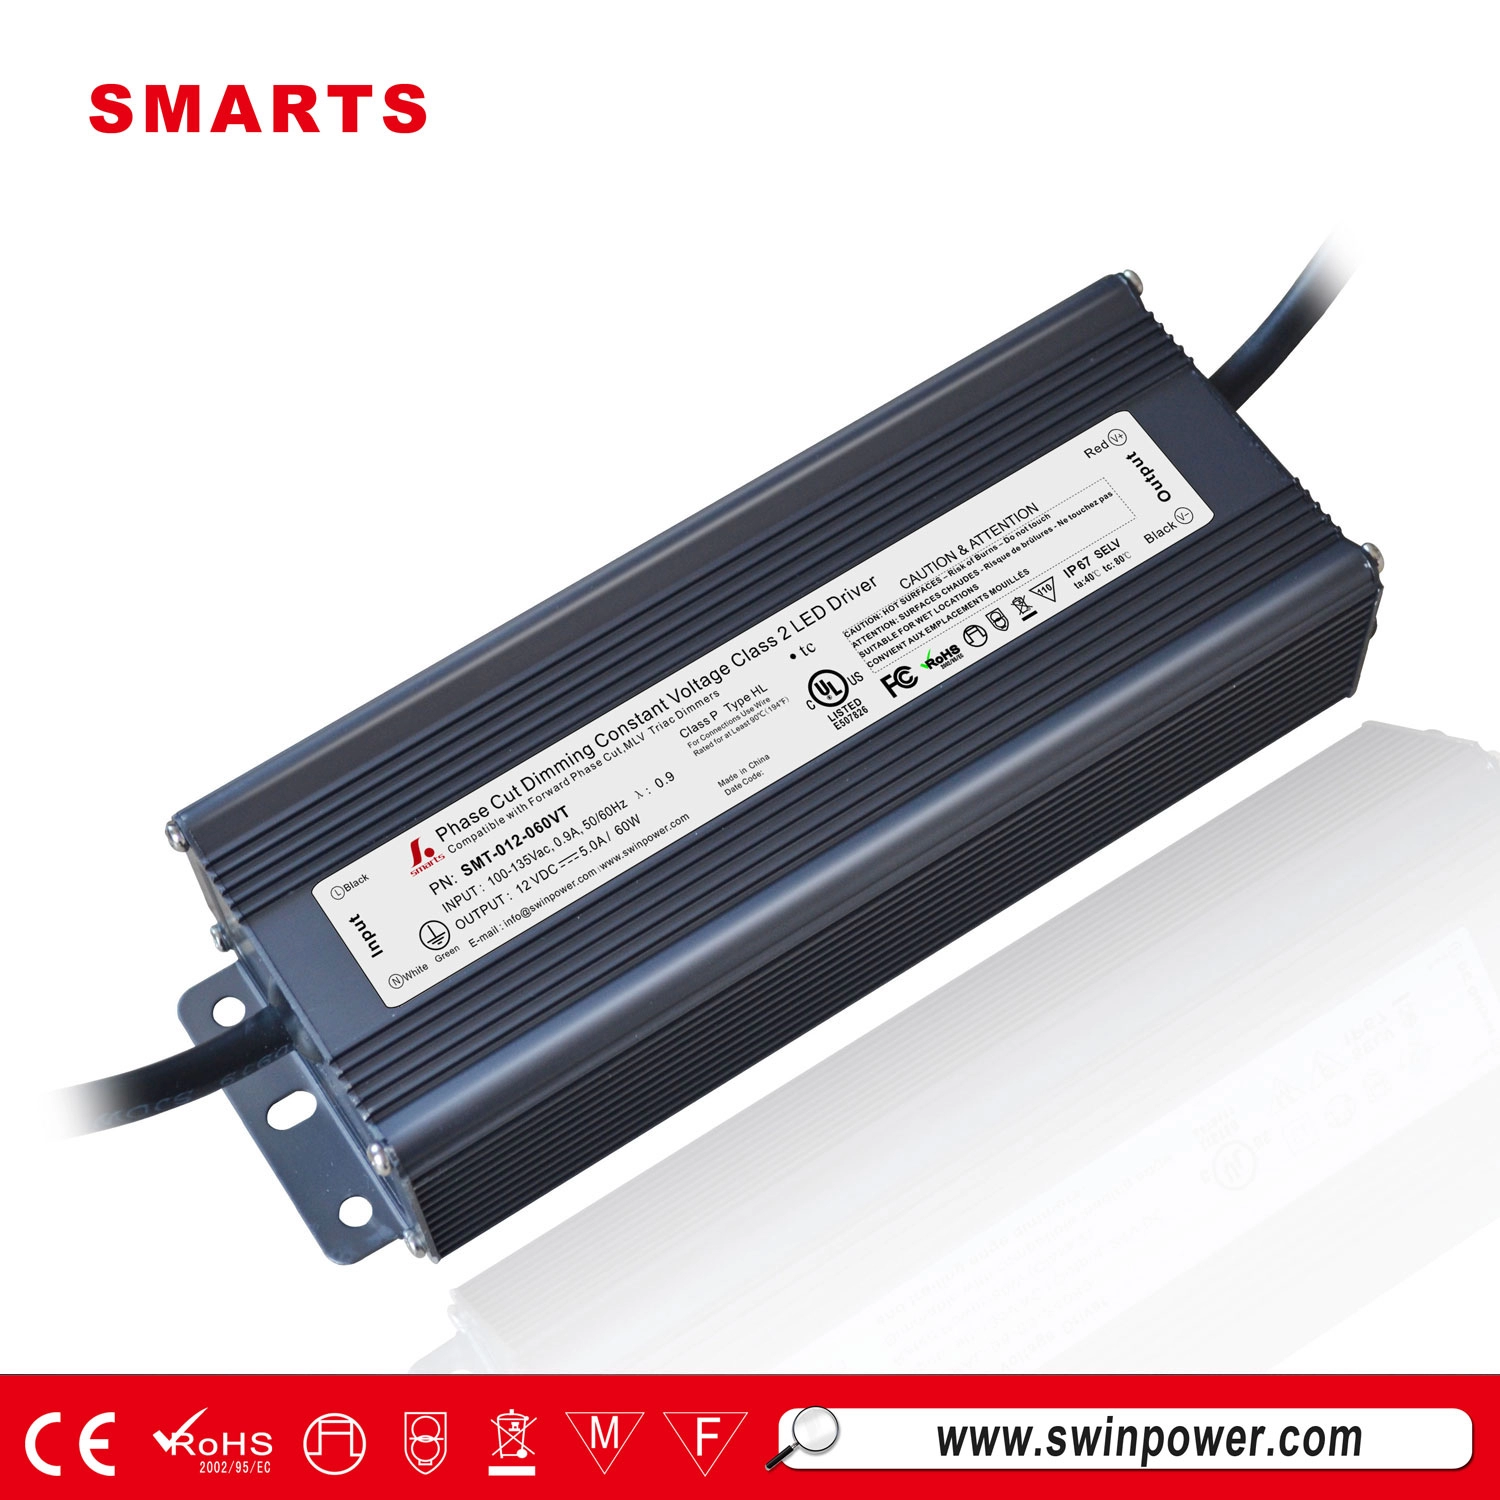 Trình điều khiển ánh sáng bảng điều khiển LED 12v 60w triac dimmable điện áp không đổi dẫn nguồn cung cấp điện